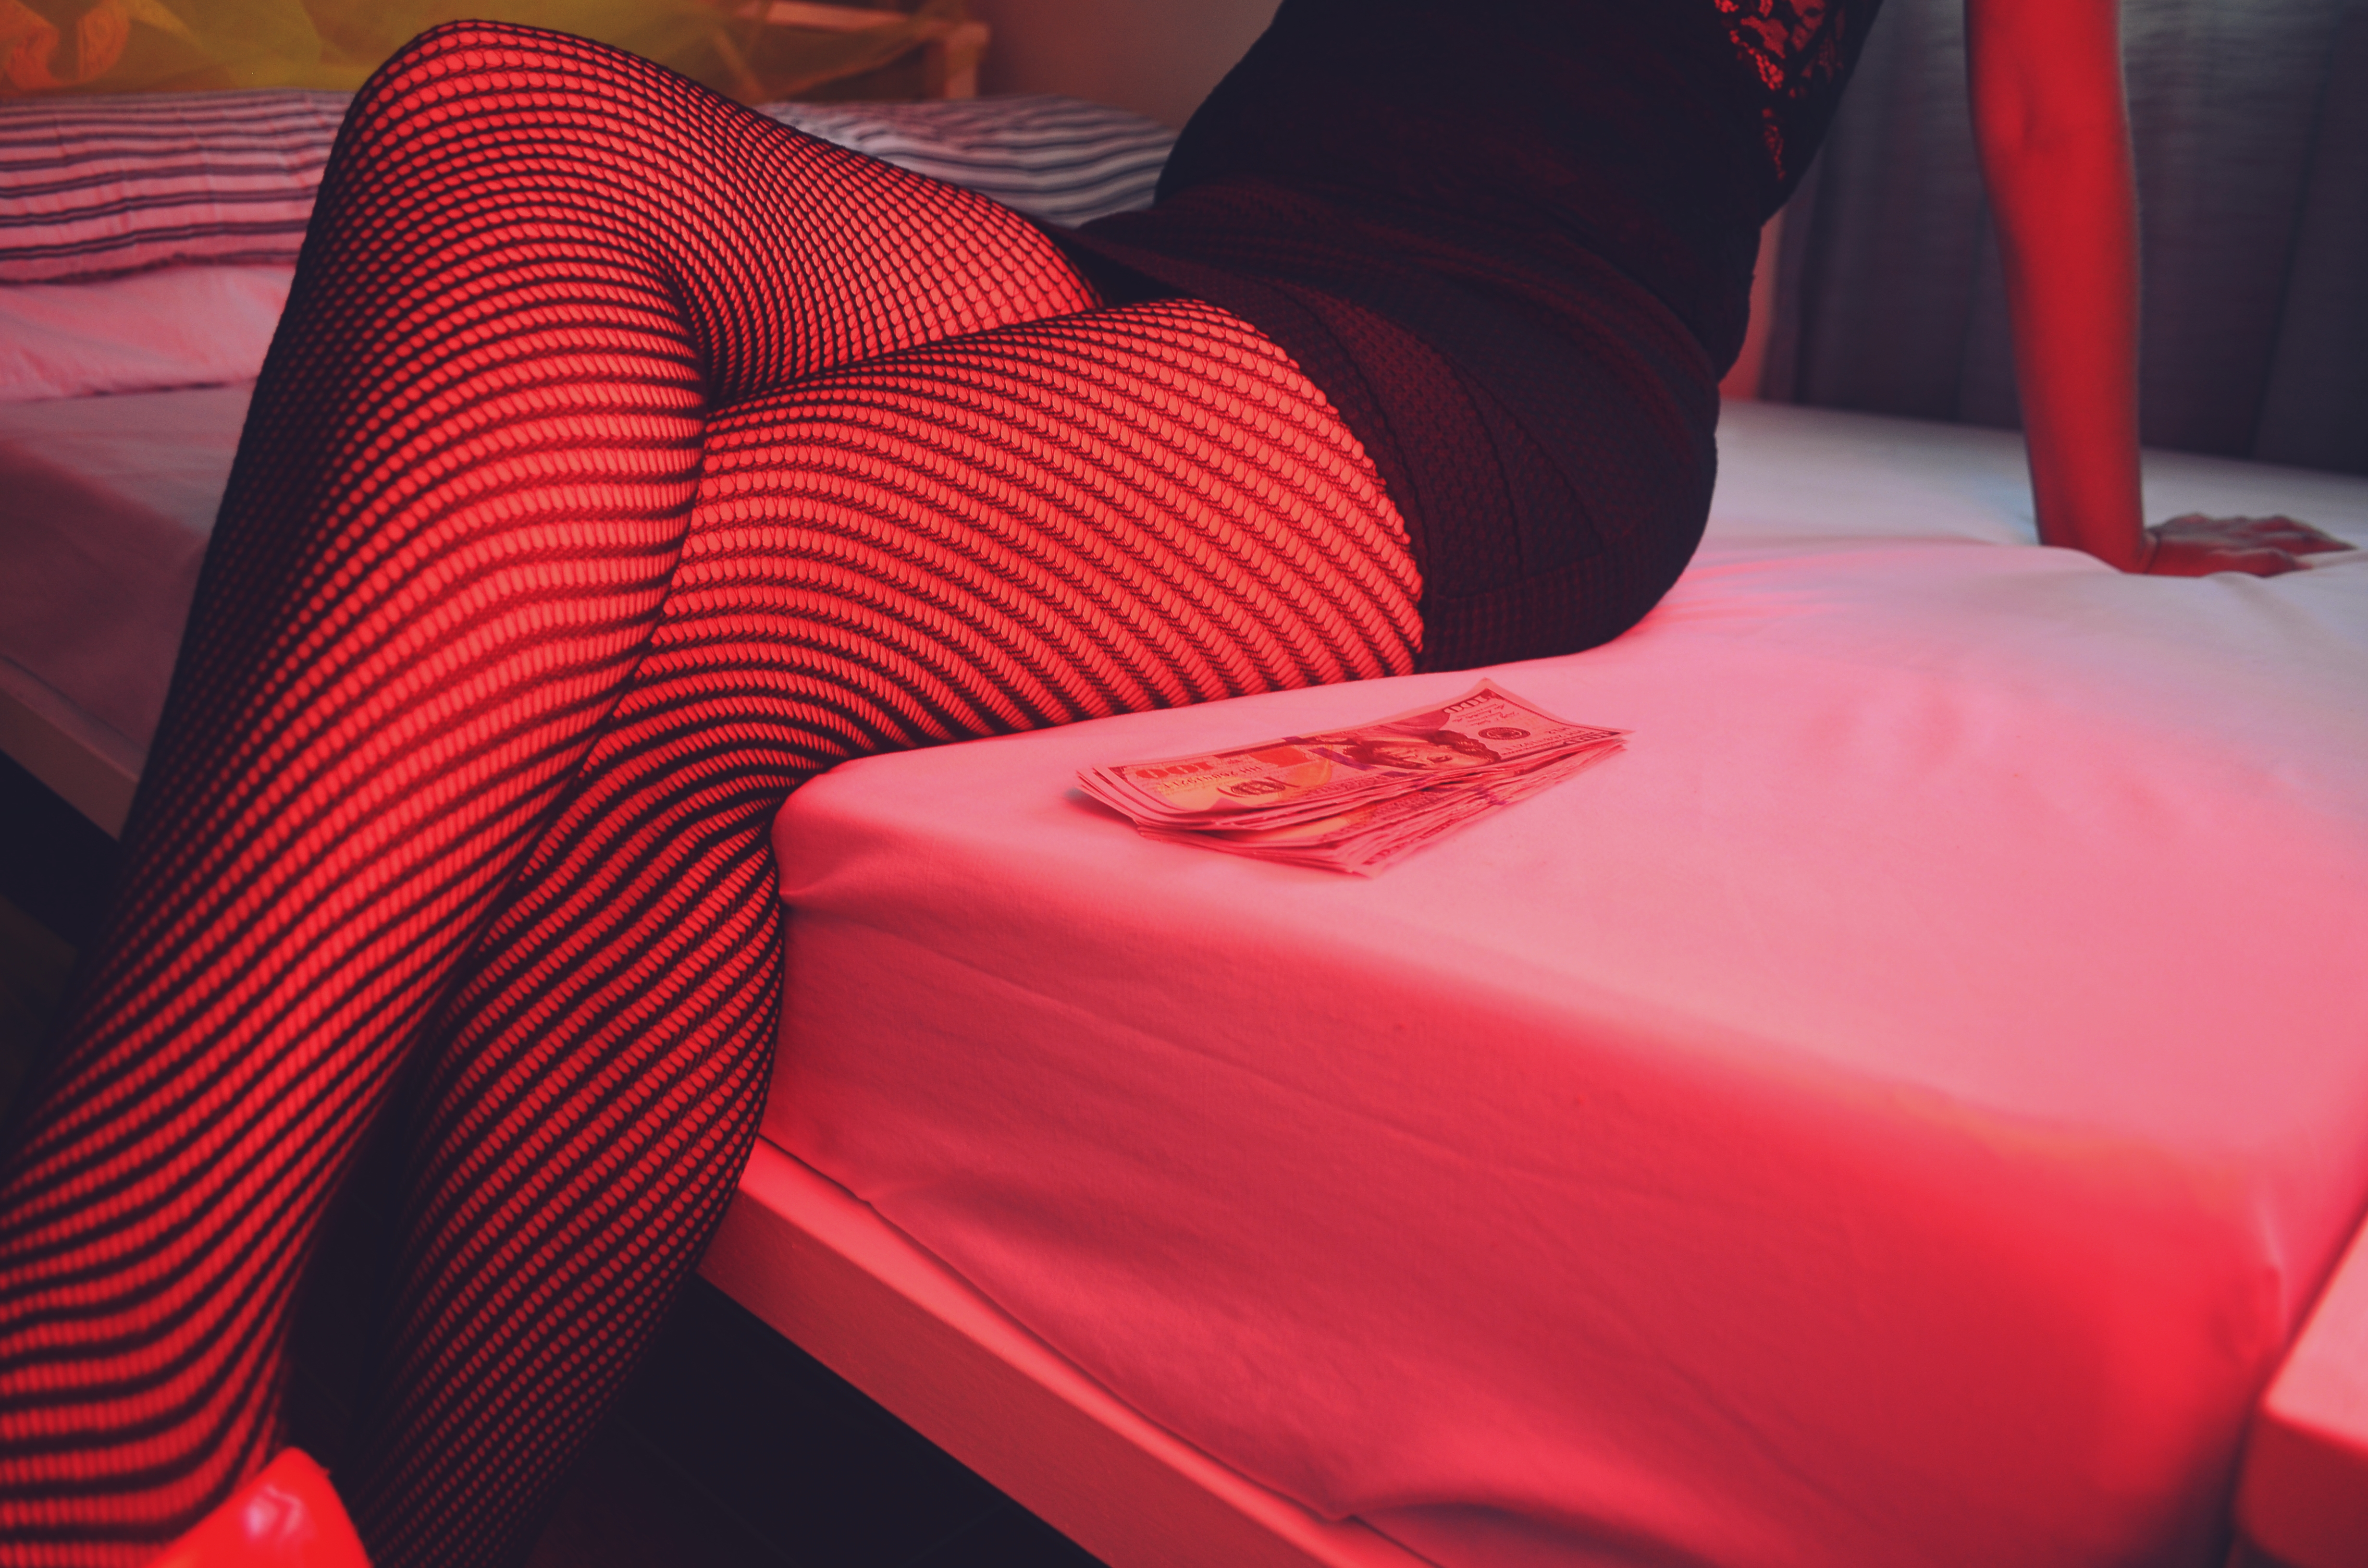 Internet ha hecho desaparecer la prostitución callejera. Se estima que en Francia dos tercios del total de la prostitución. (Foto Prensa Libre: Servicios)